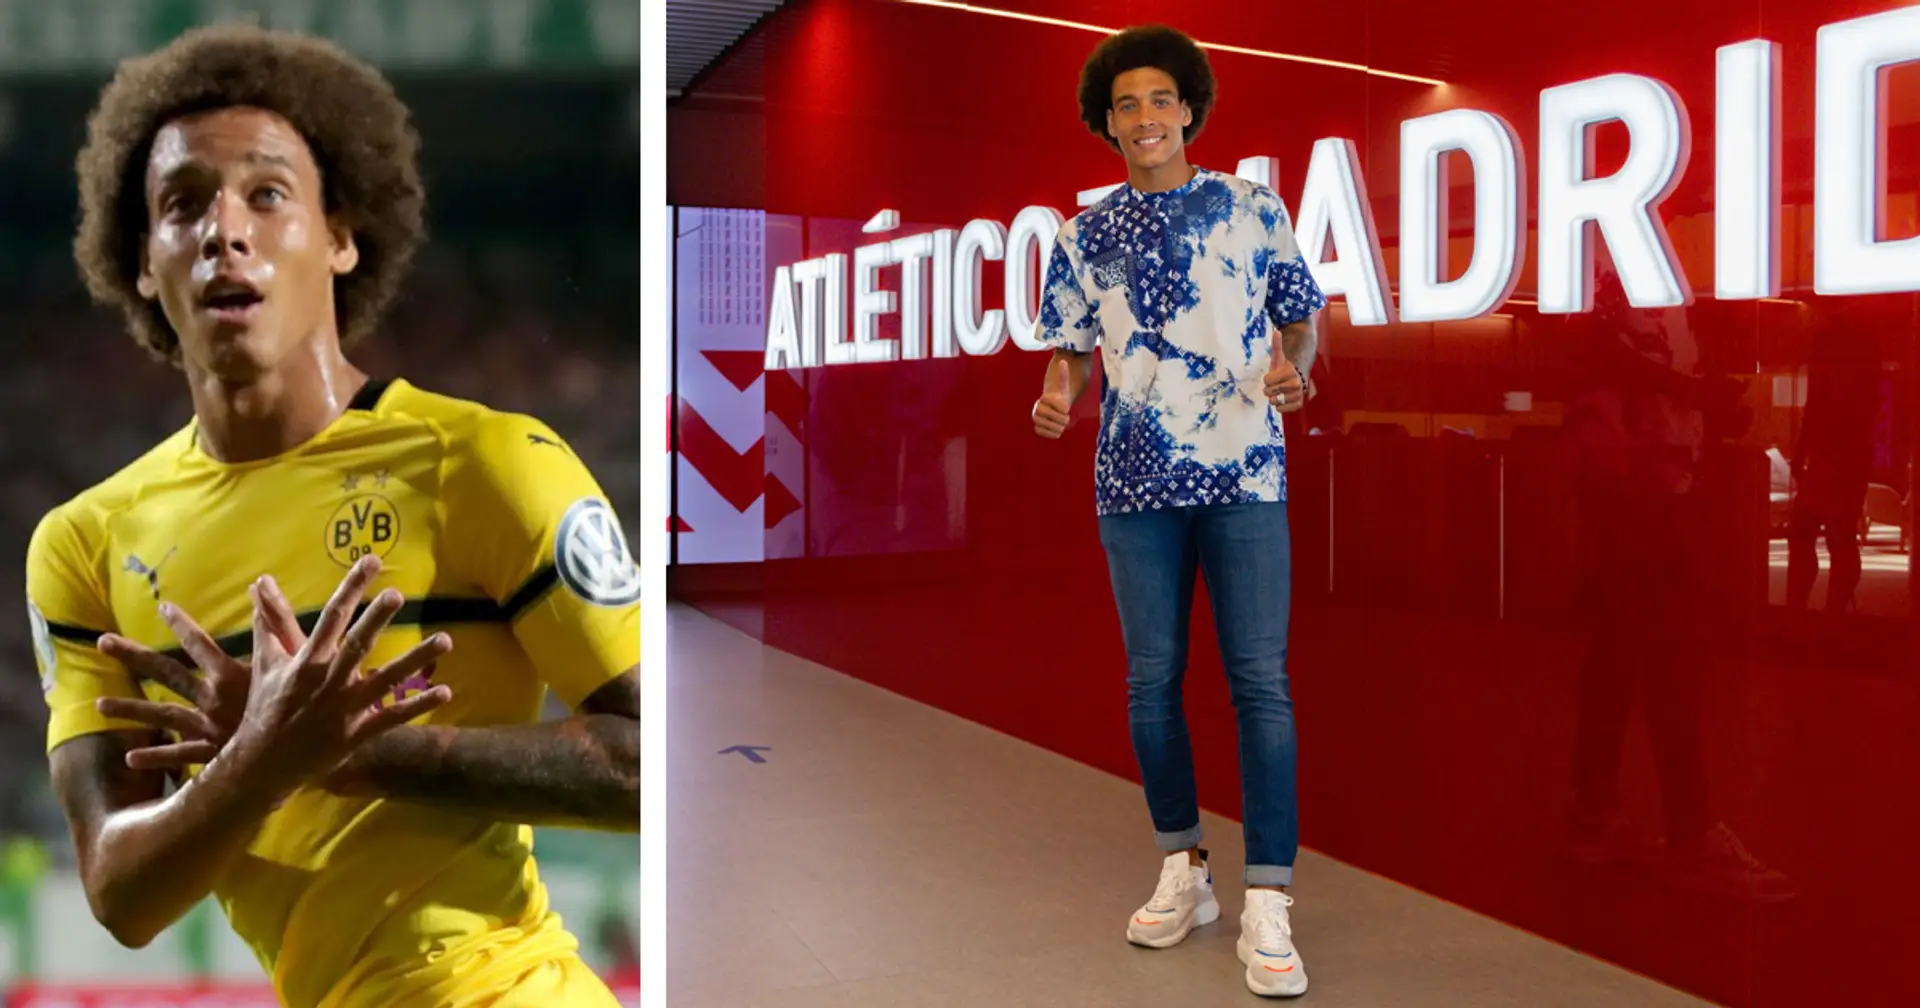 Nach 4 Jahren bei Dortmund: Axel Witsels Wechsel zu Atletico Madrid wurde offiziell angekündigt